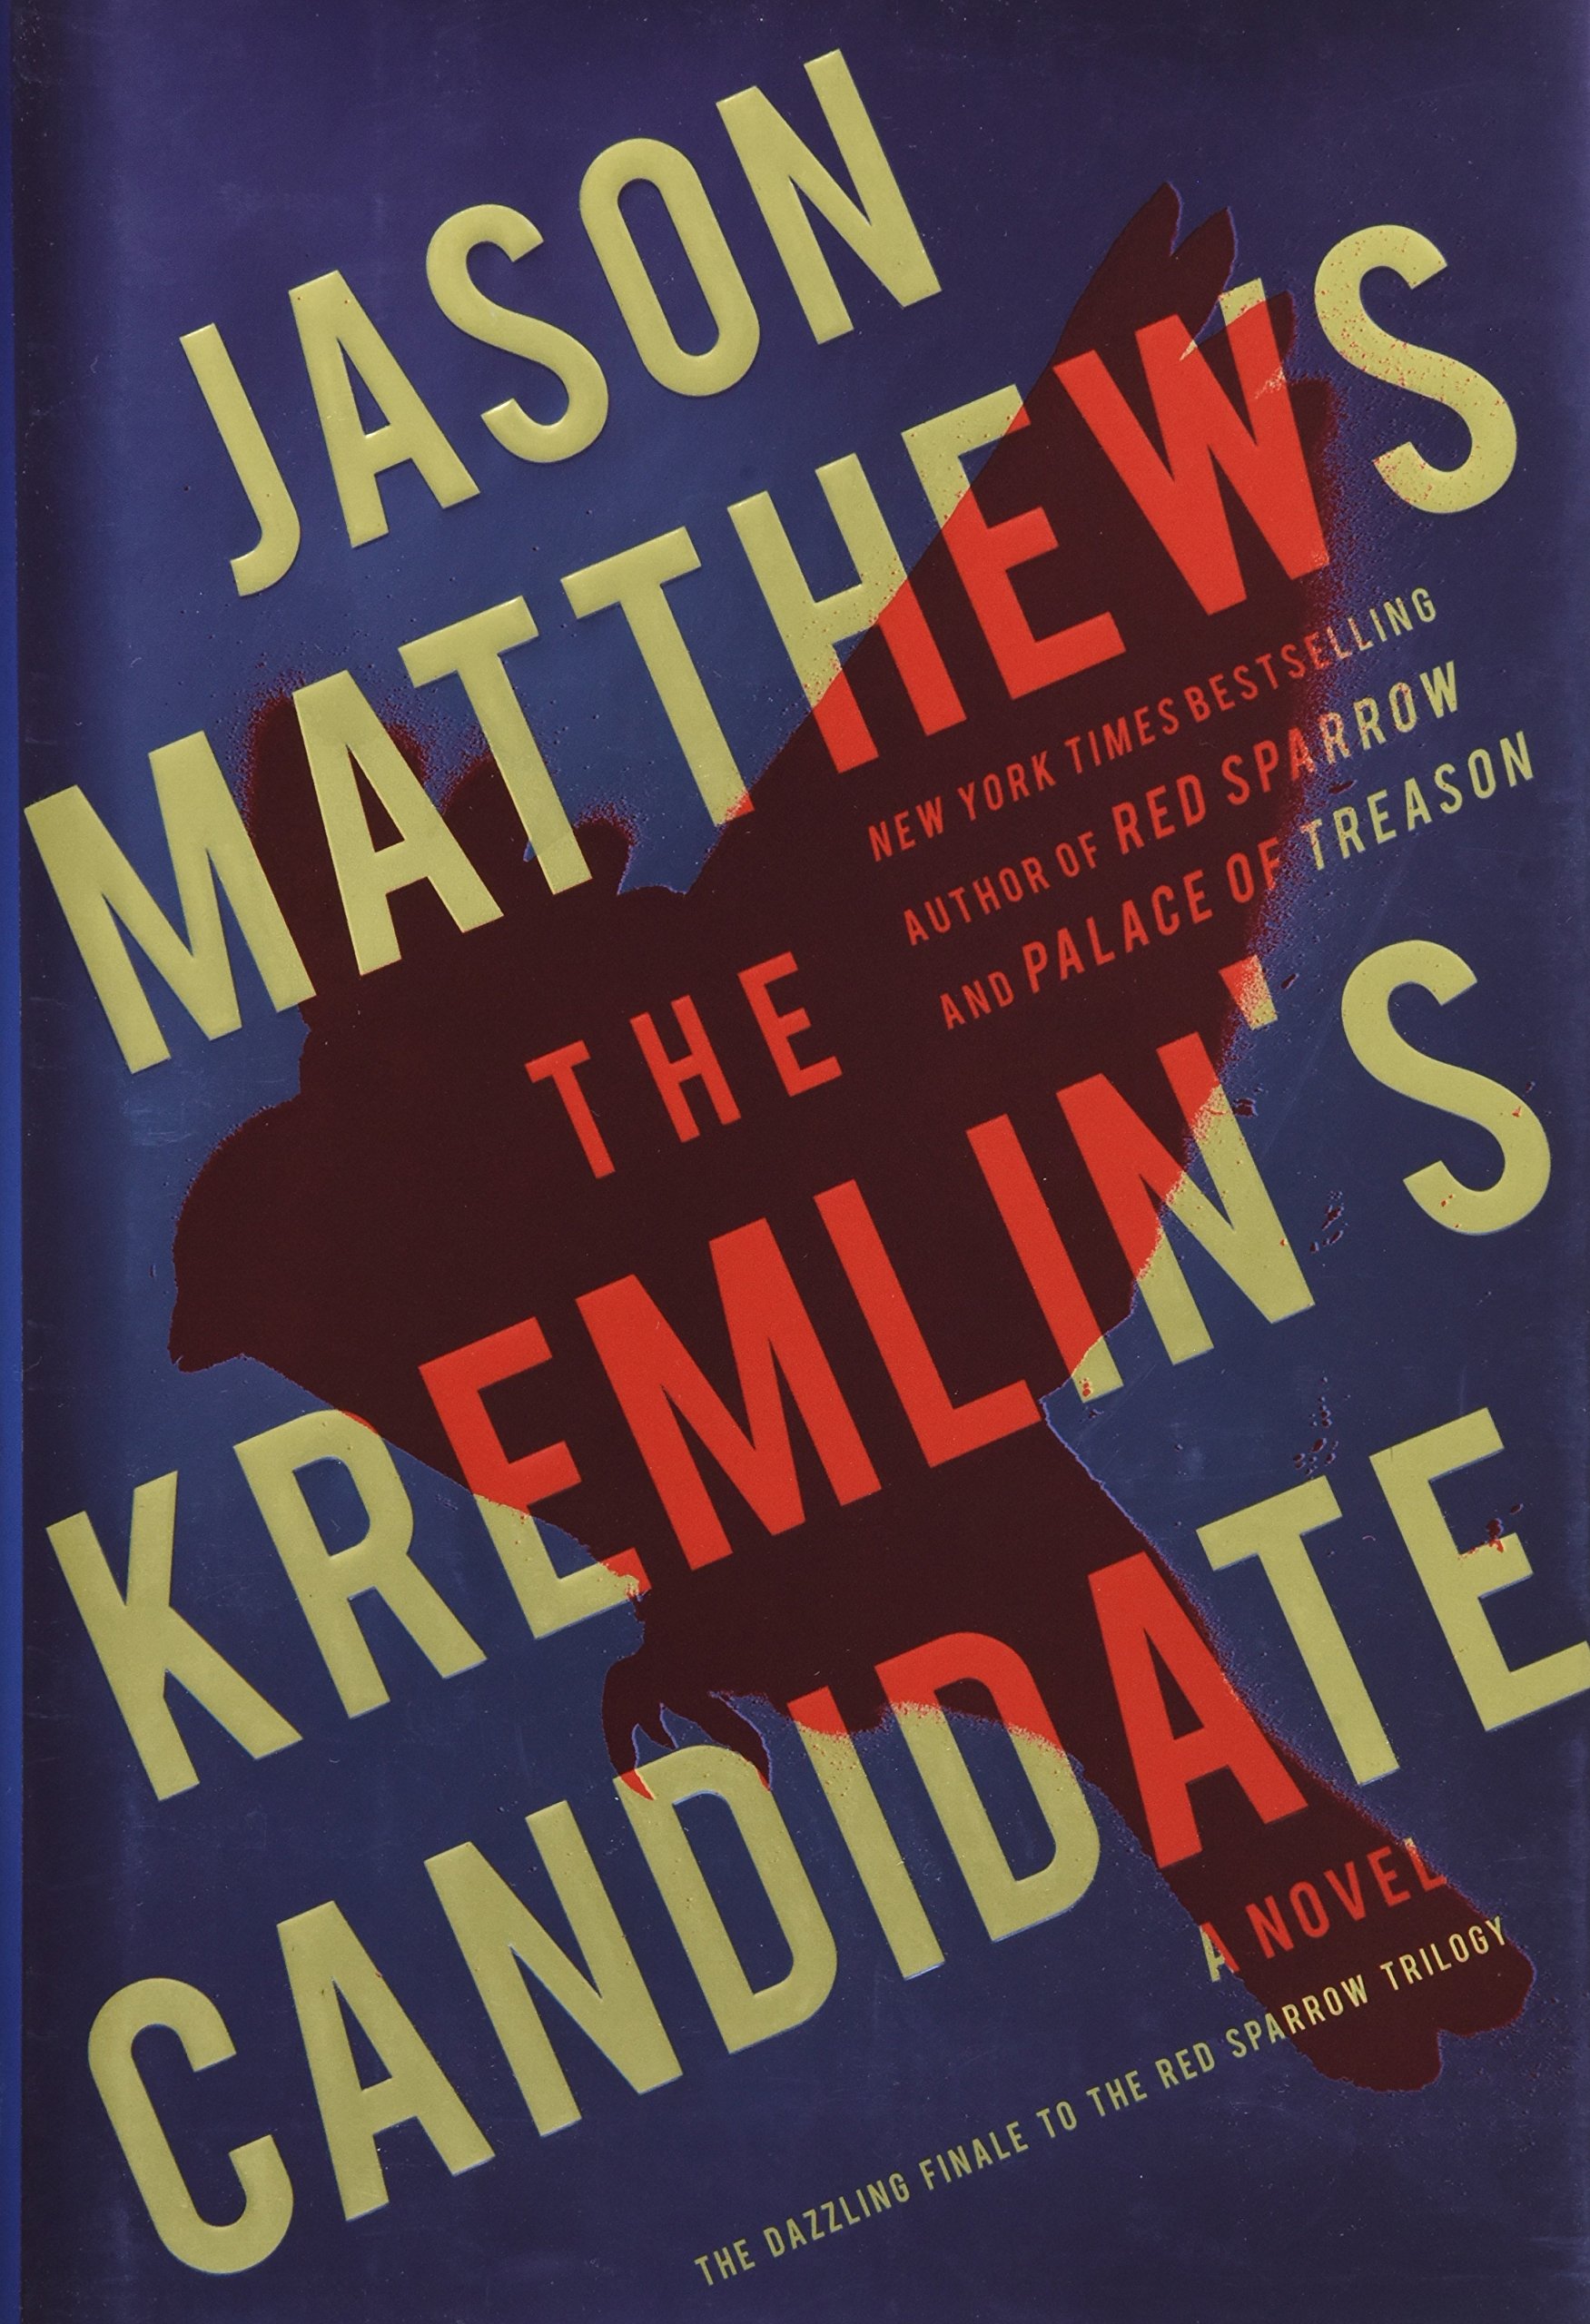 The Kremlin's candidate : a novel